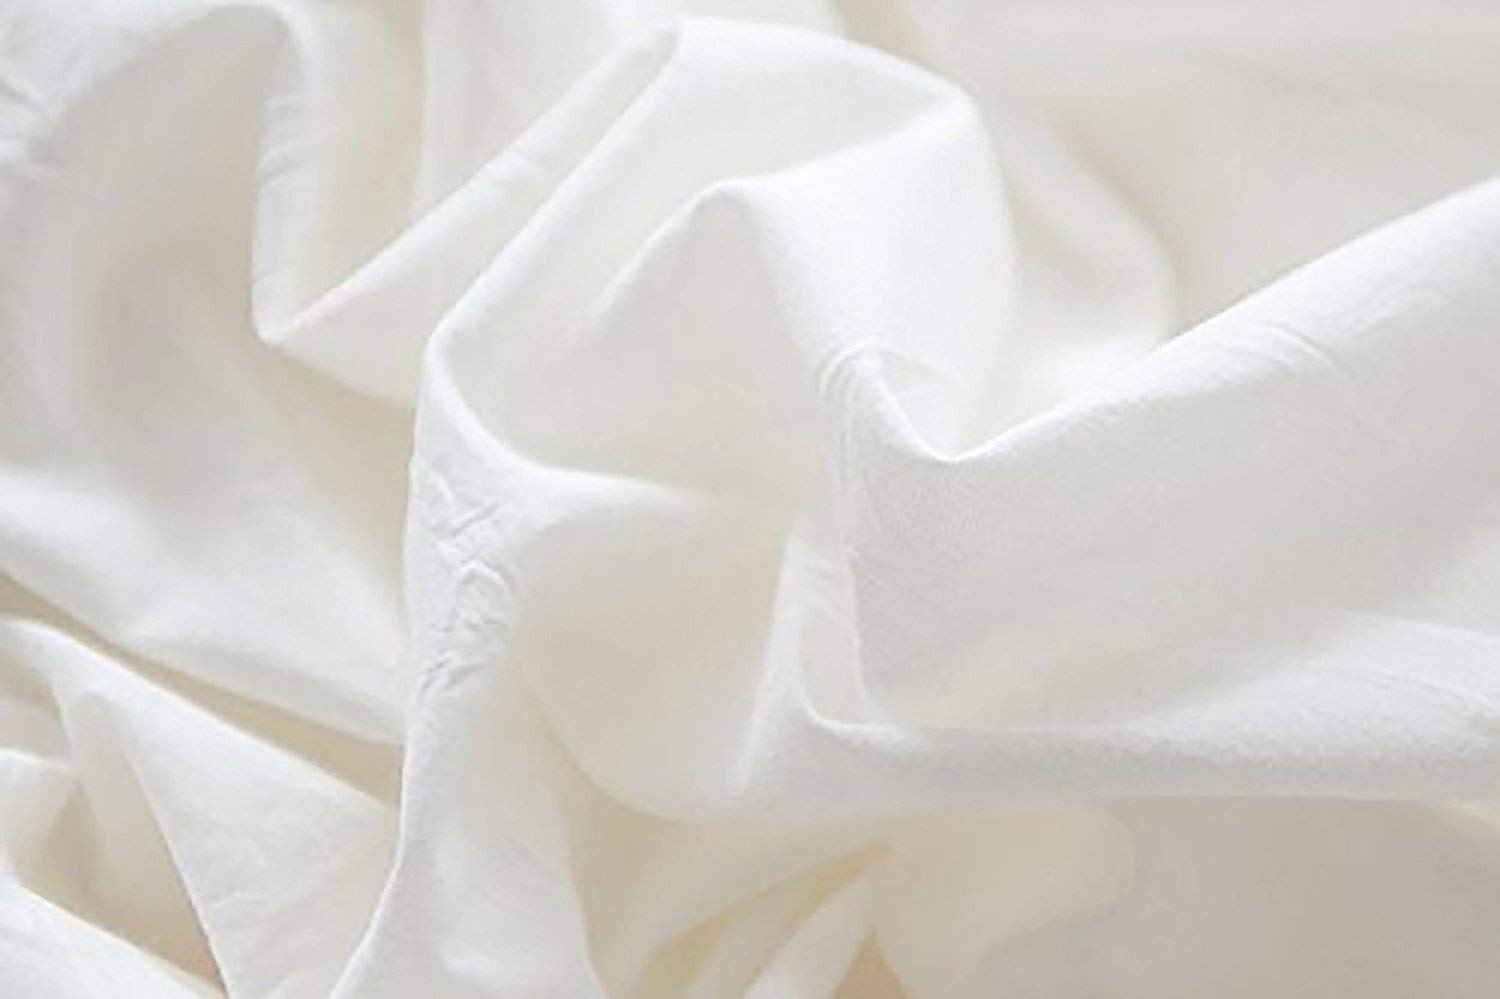 White Pom Pom Fringed Cotton Duvet Cover